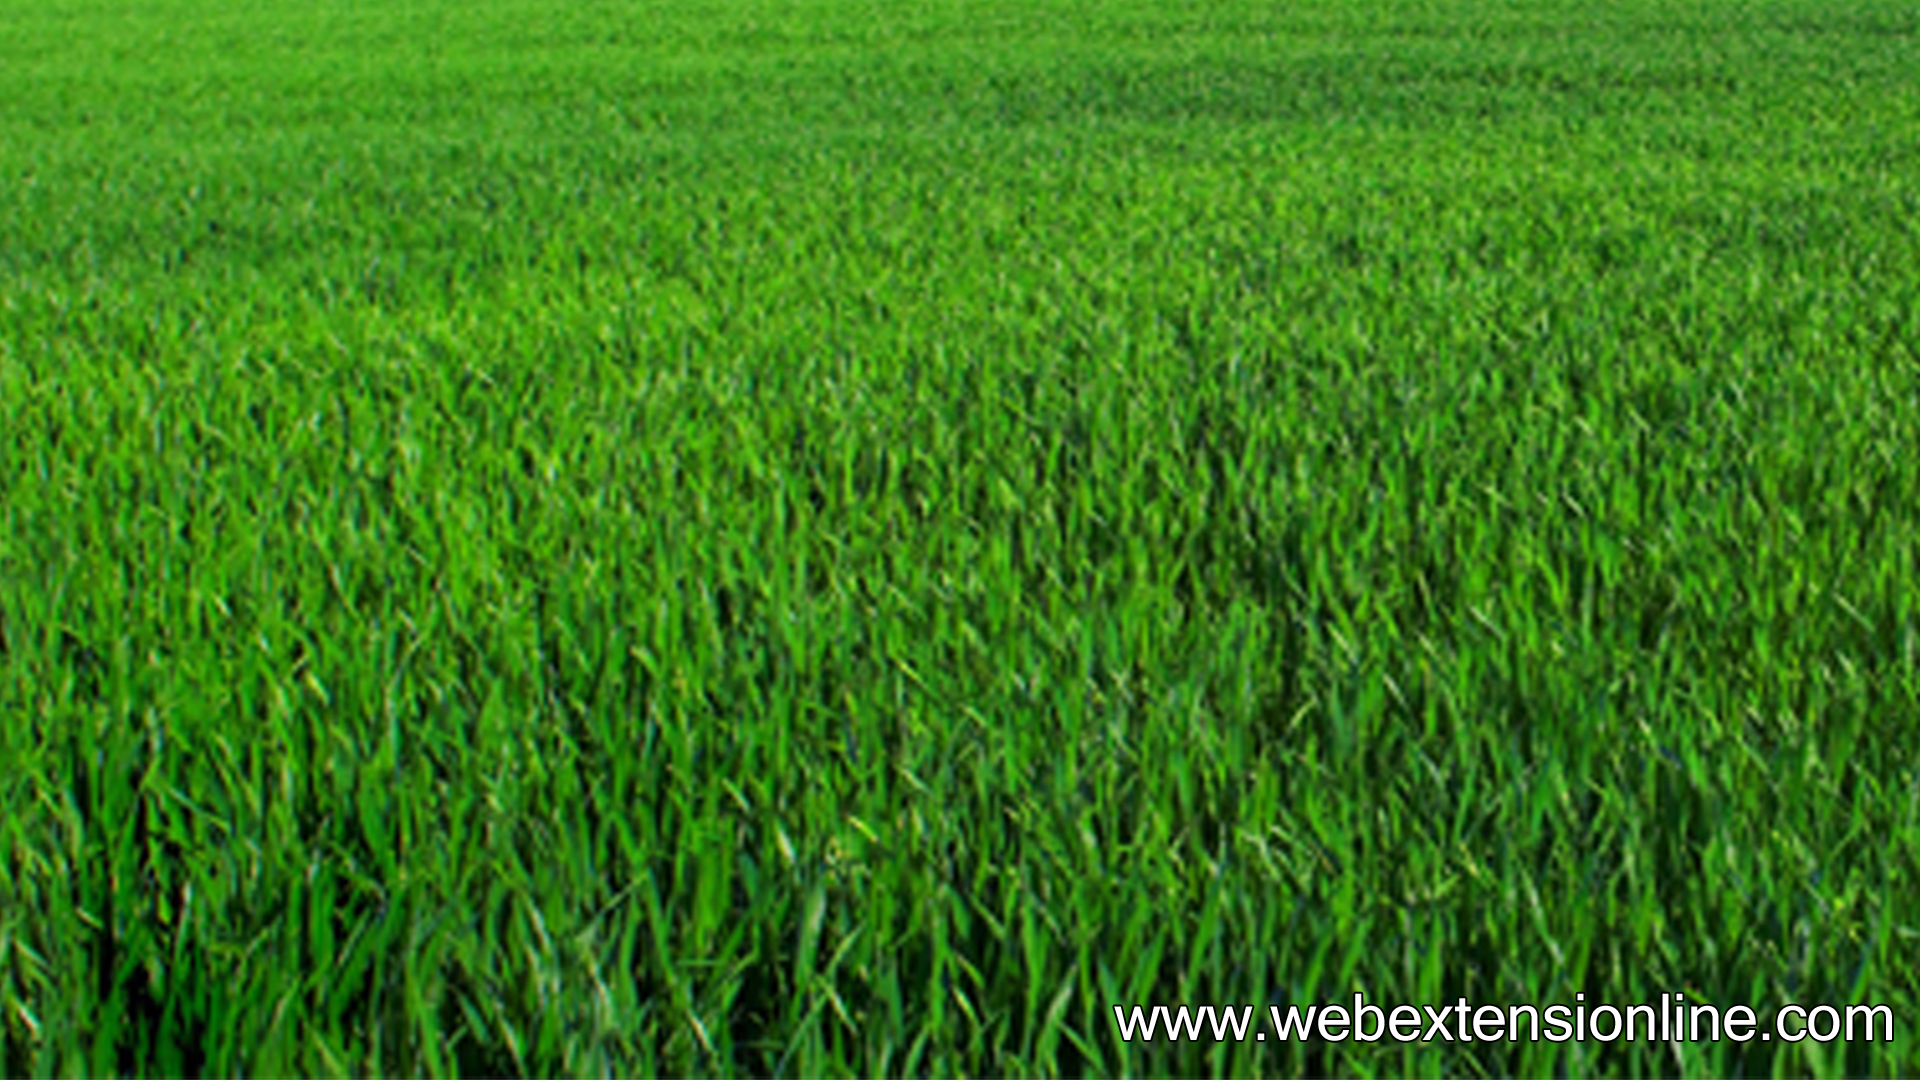  HD Natural Green Grass wallpaper webextensionline 1920x1080